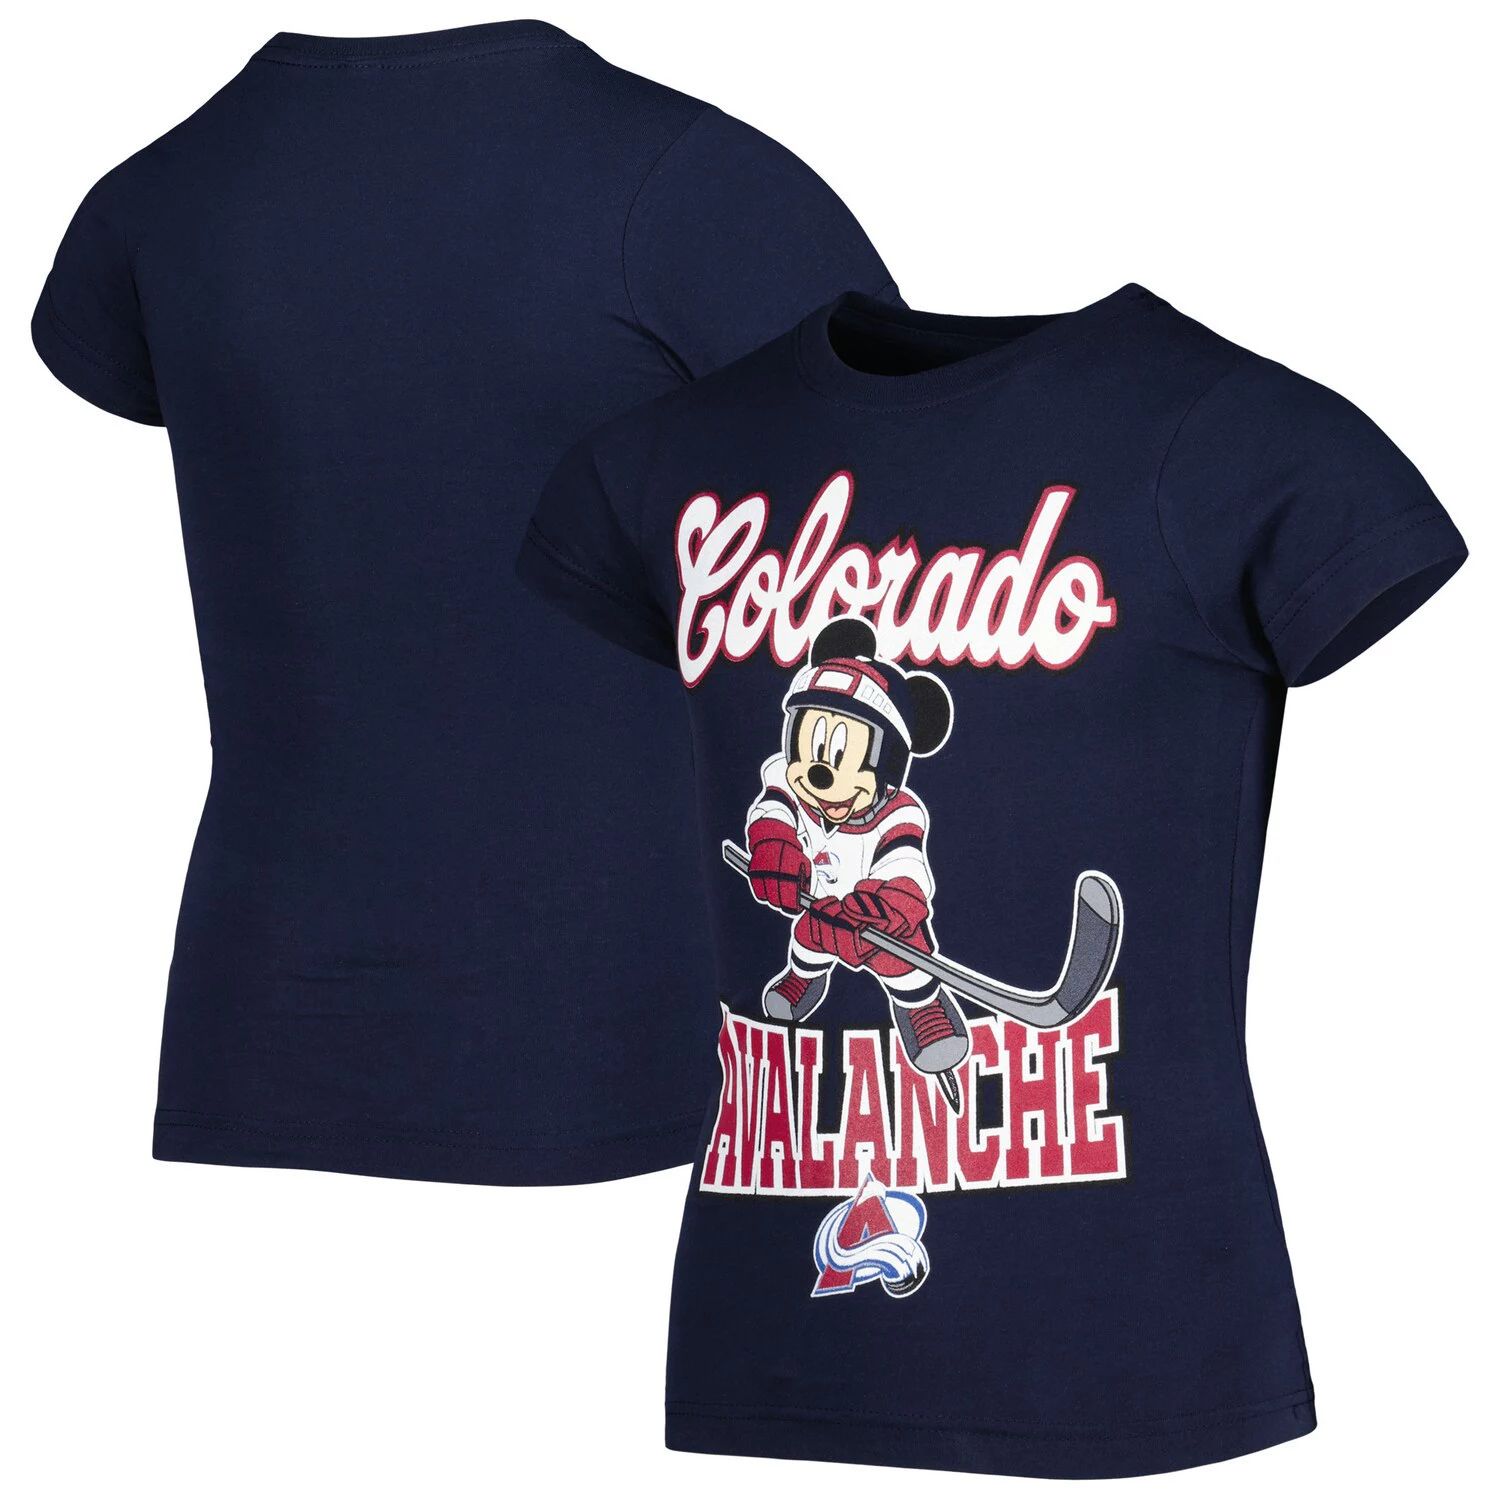 Молодежная футболка для девочек «Колорадо Эвеланш» с Микки Маусом «Go Team Go» Outerstuff